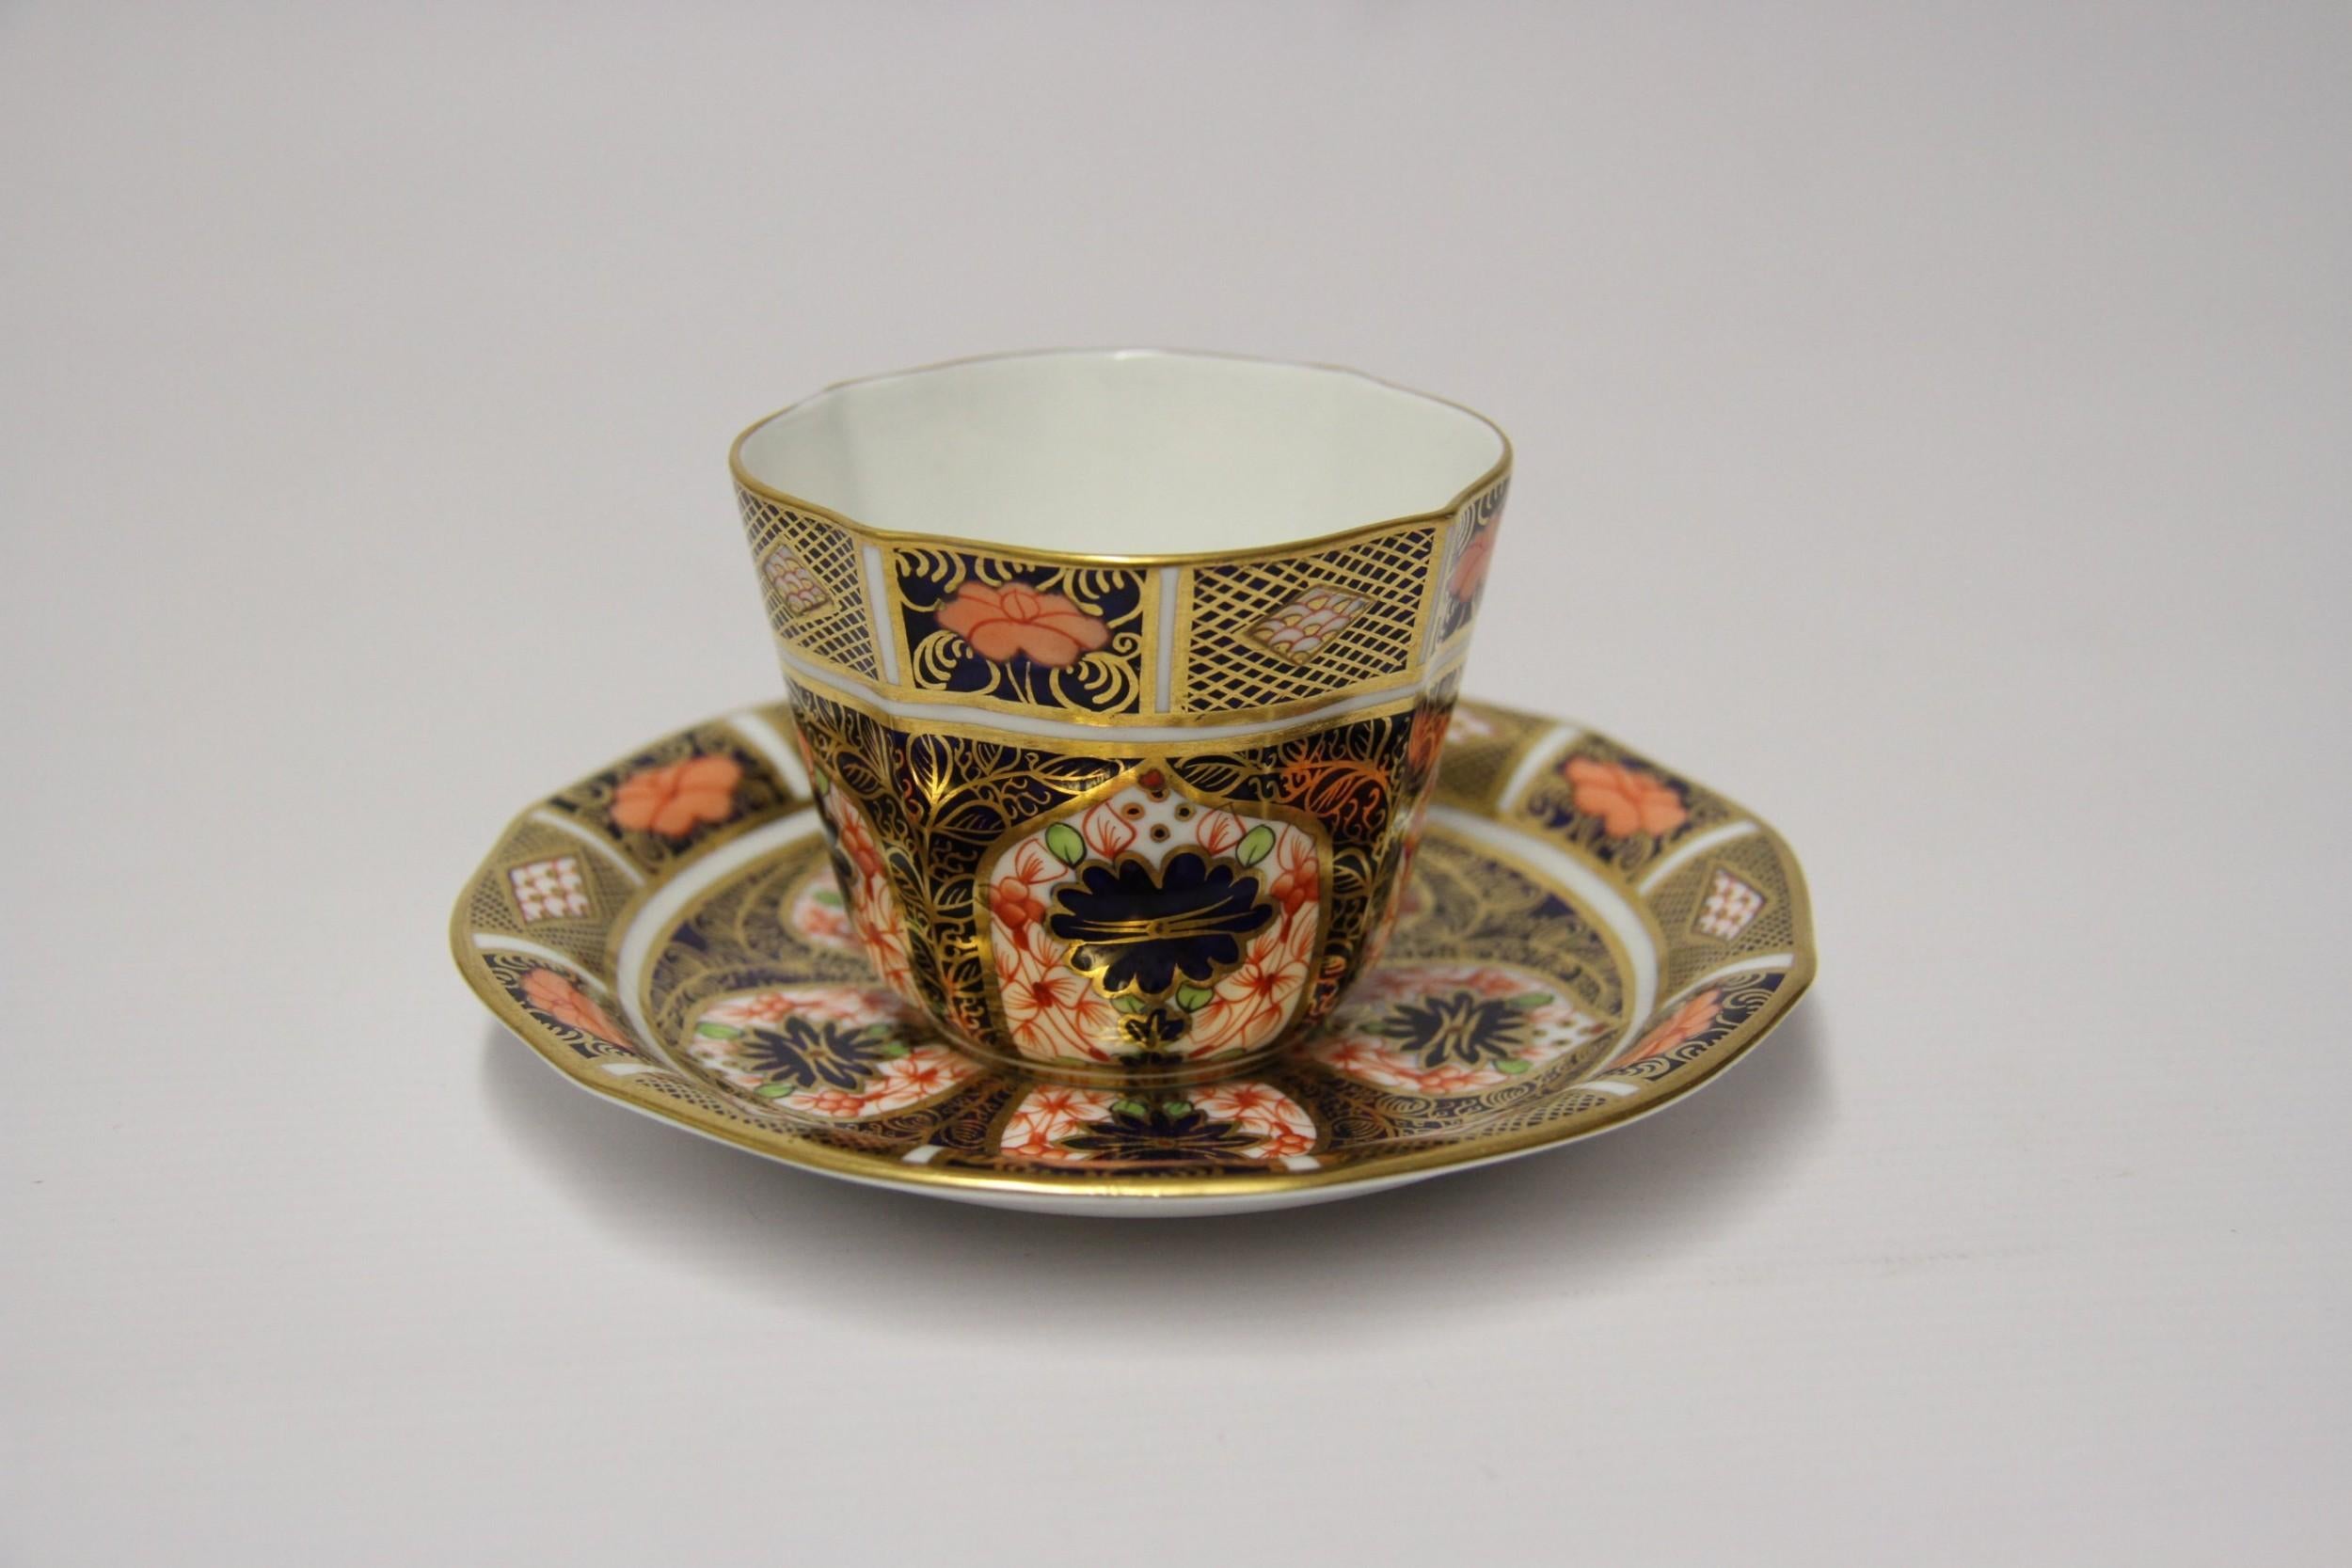 royal crown derby tea sets for sale